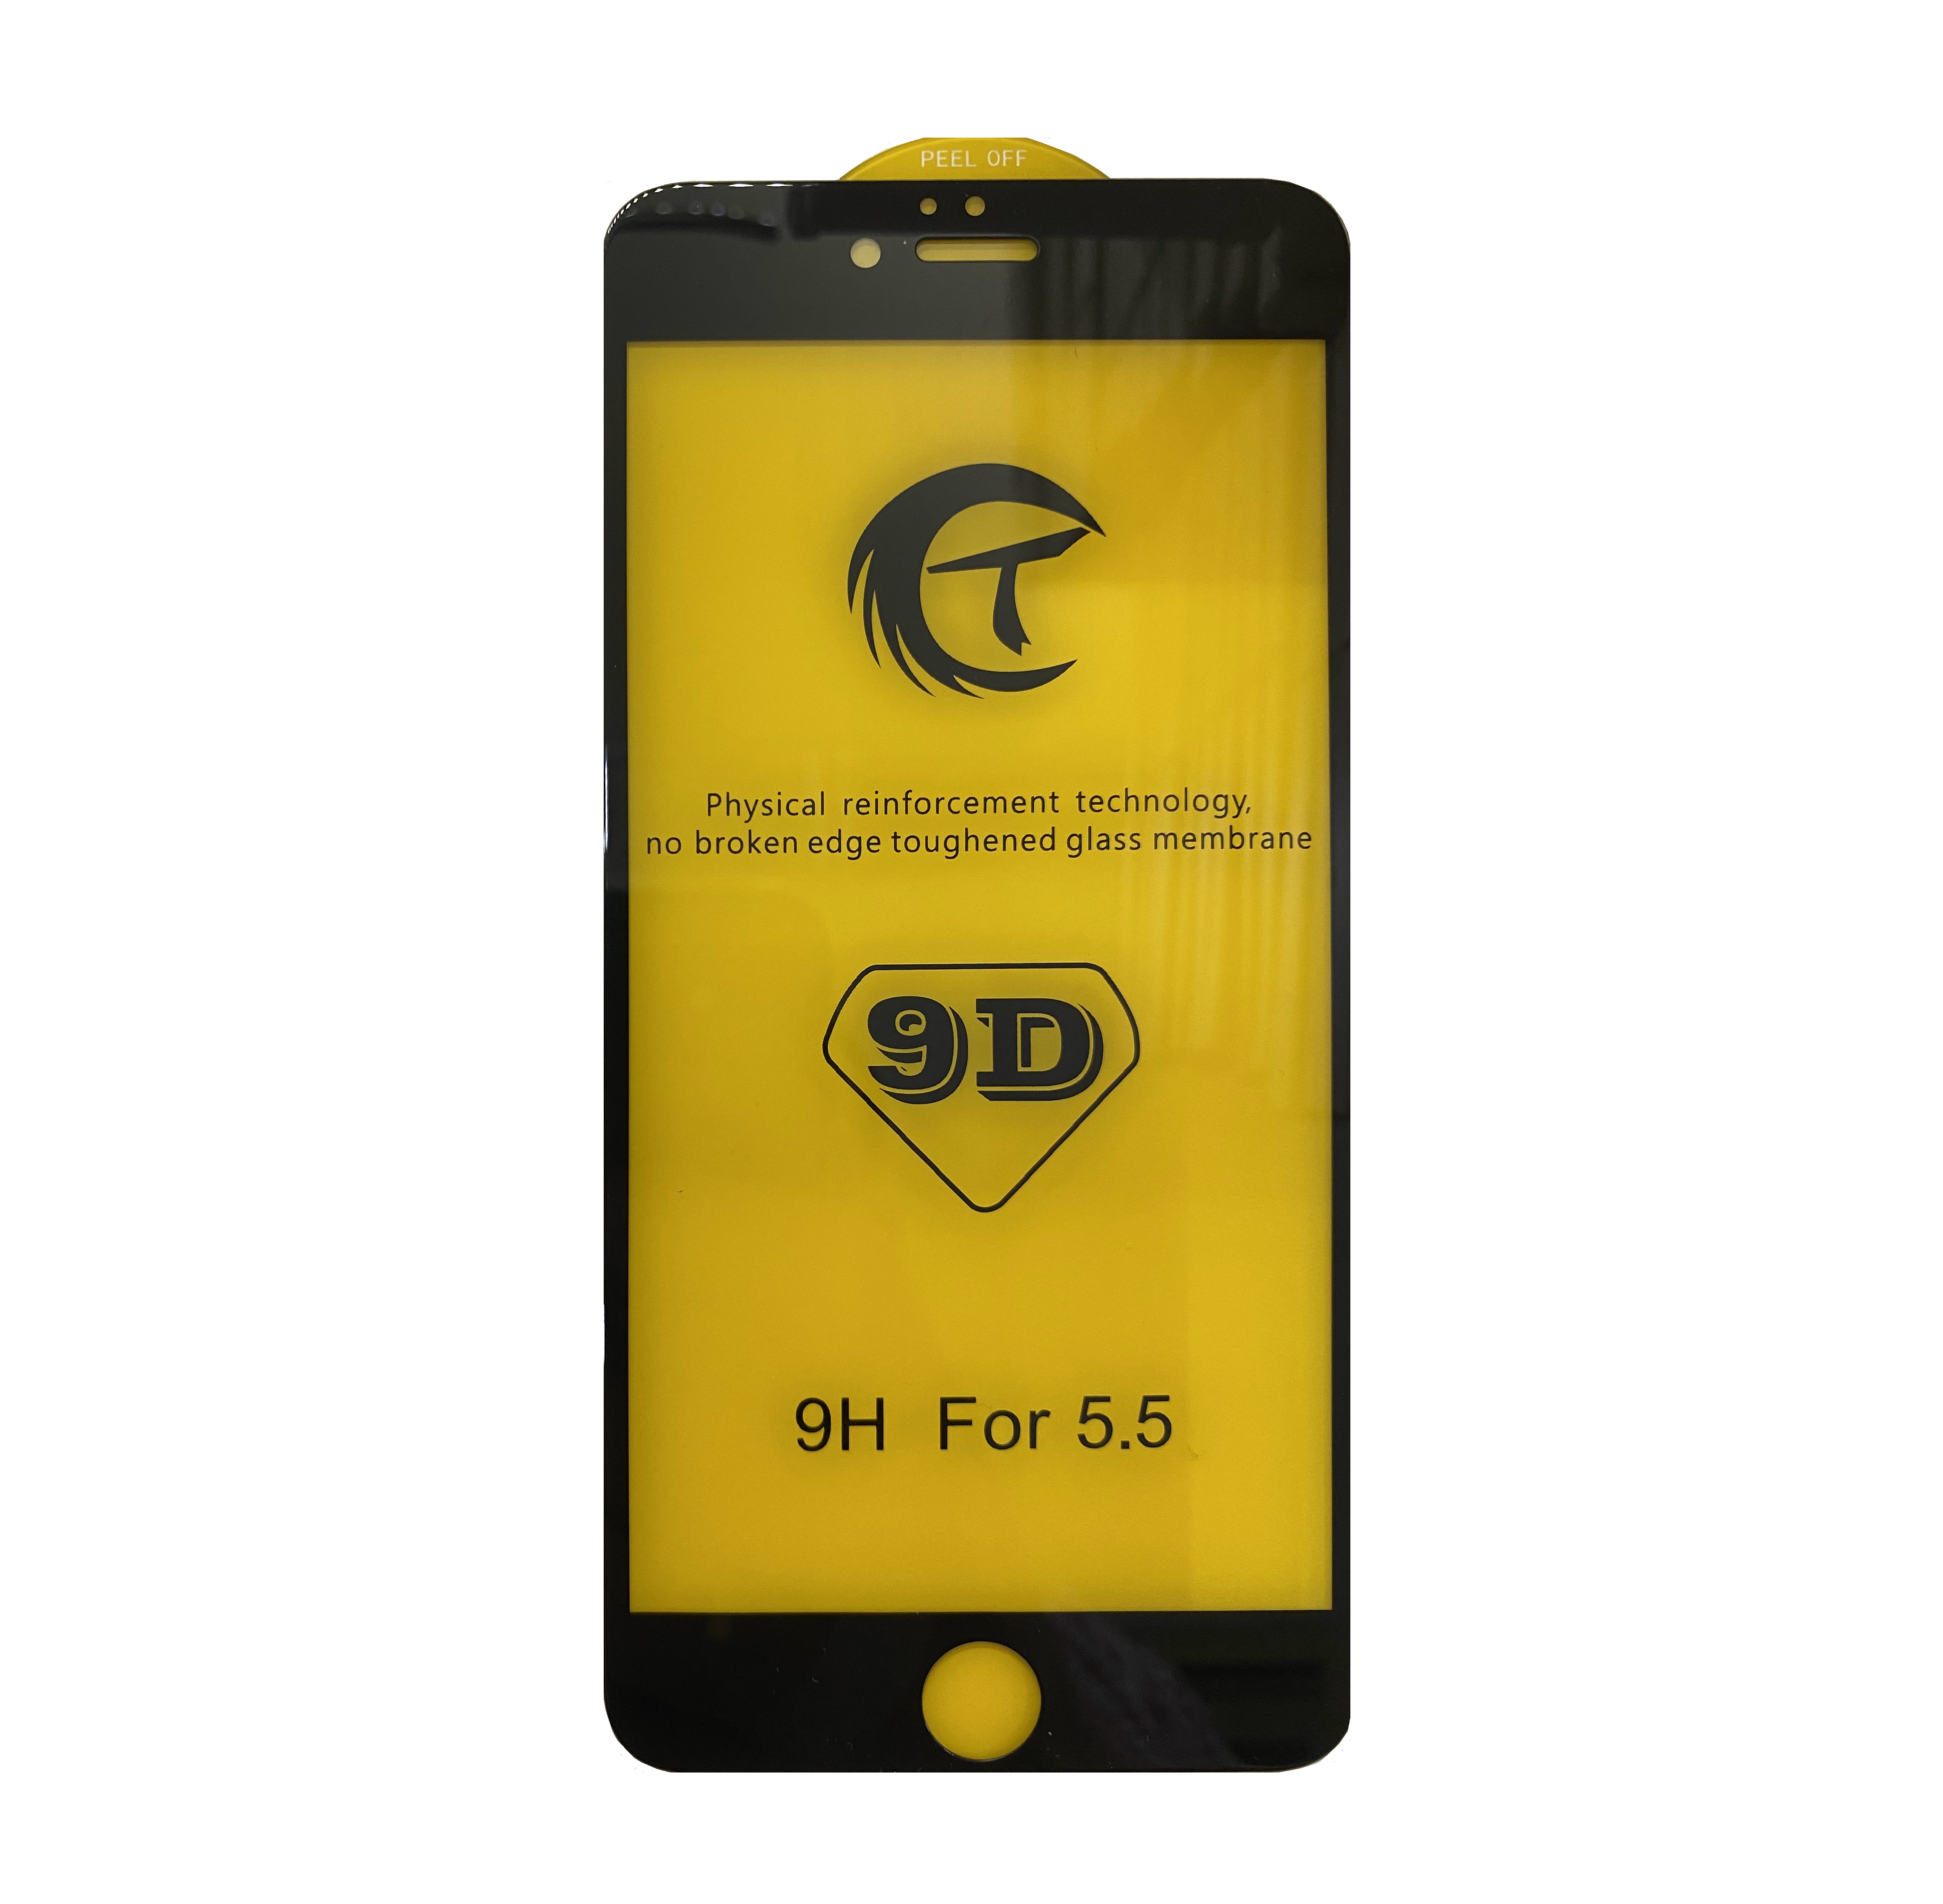 Стекло защитное 9D для iPhone 6/6S (чёрный) - Service-Help.ru